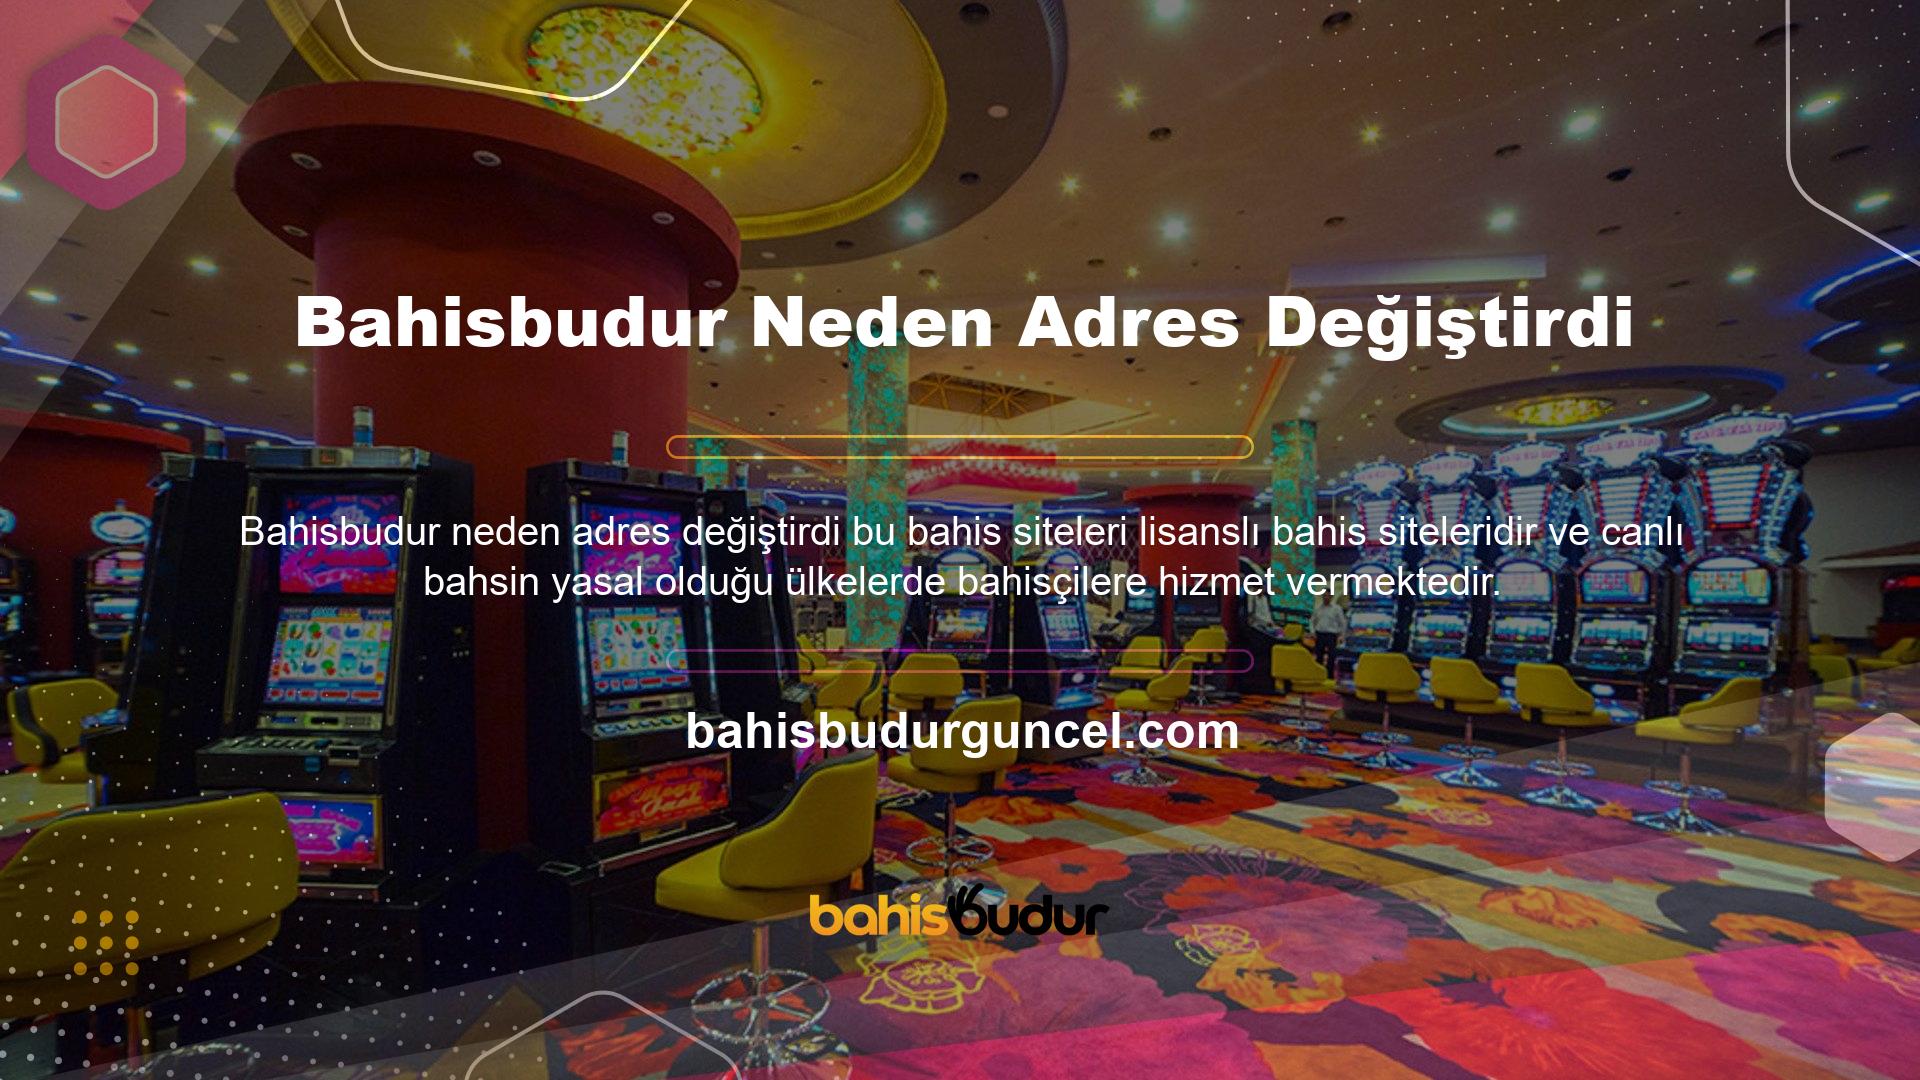 Bahisbudur yasal resmi bir bahis sitesi olmasına rağmen Türkiye'de canlı bahis yasal değildir, bu nedenle bahis sitesine giriş adresleri değişebilir